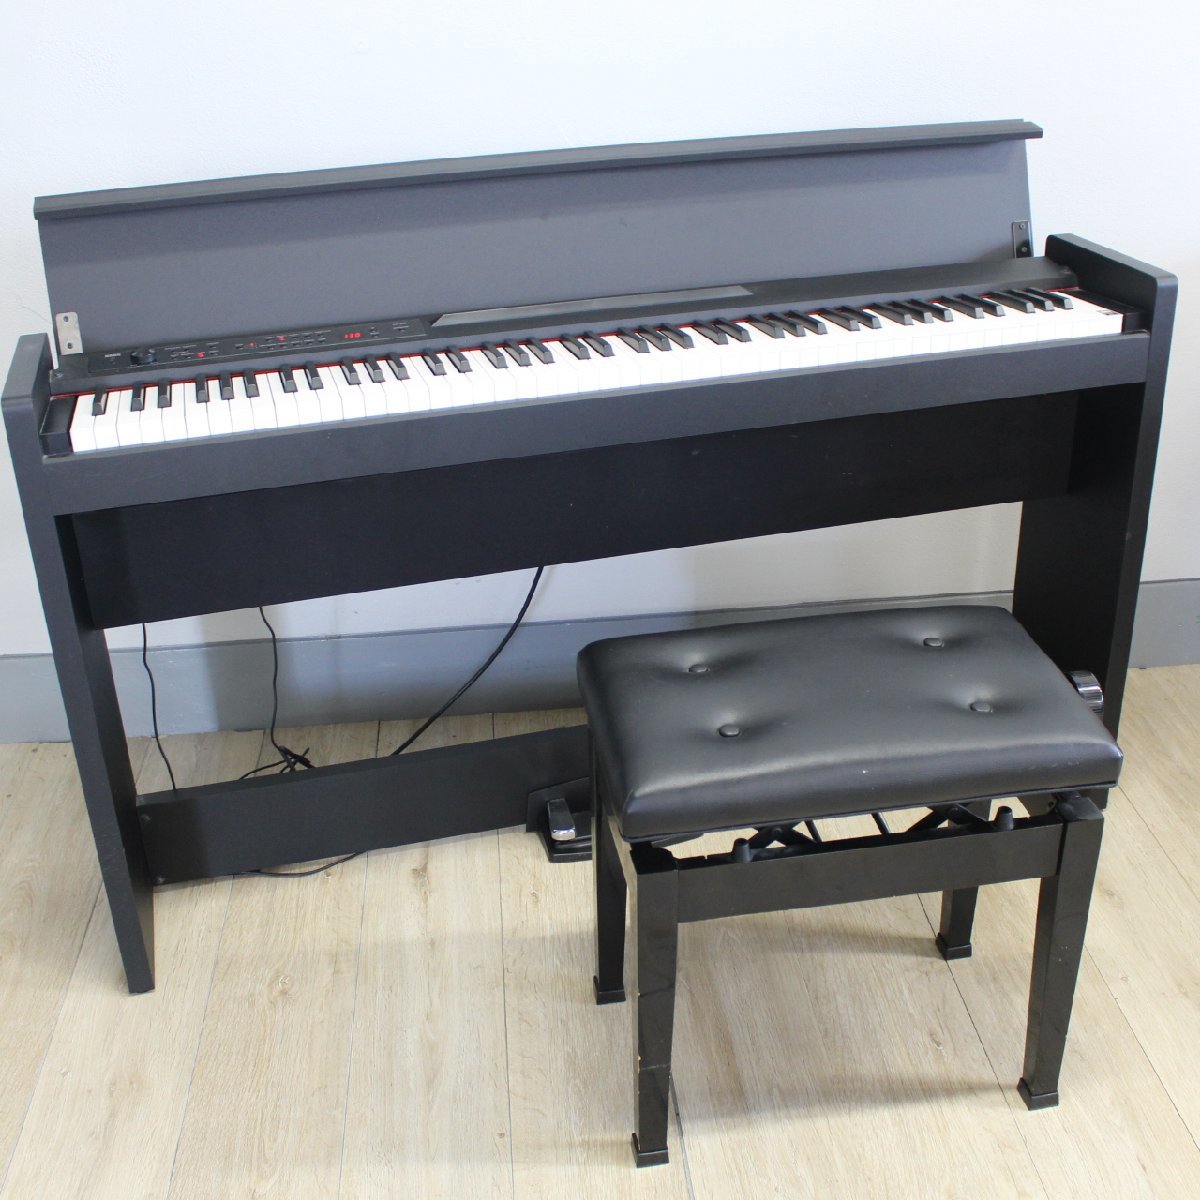 T125) KORG 電子ピアノ 2014年製 LP-380 ブラック 88鍵 音色数30 RH3鍵盤 エフェクト3つ 椅子付き 楽器 コルグ  直取り/自社配送限定